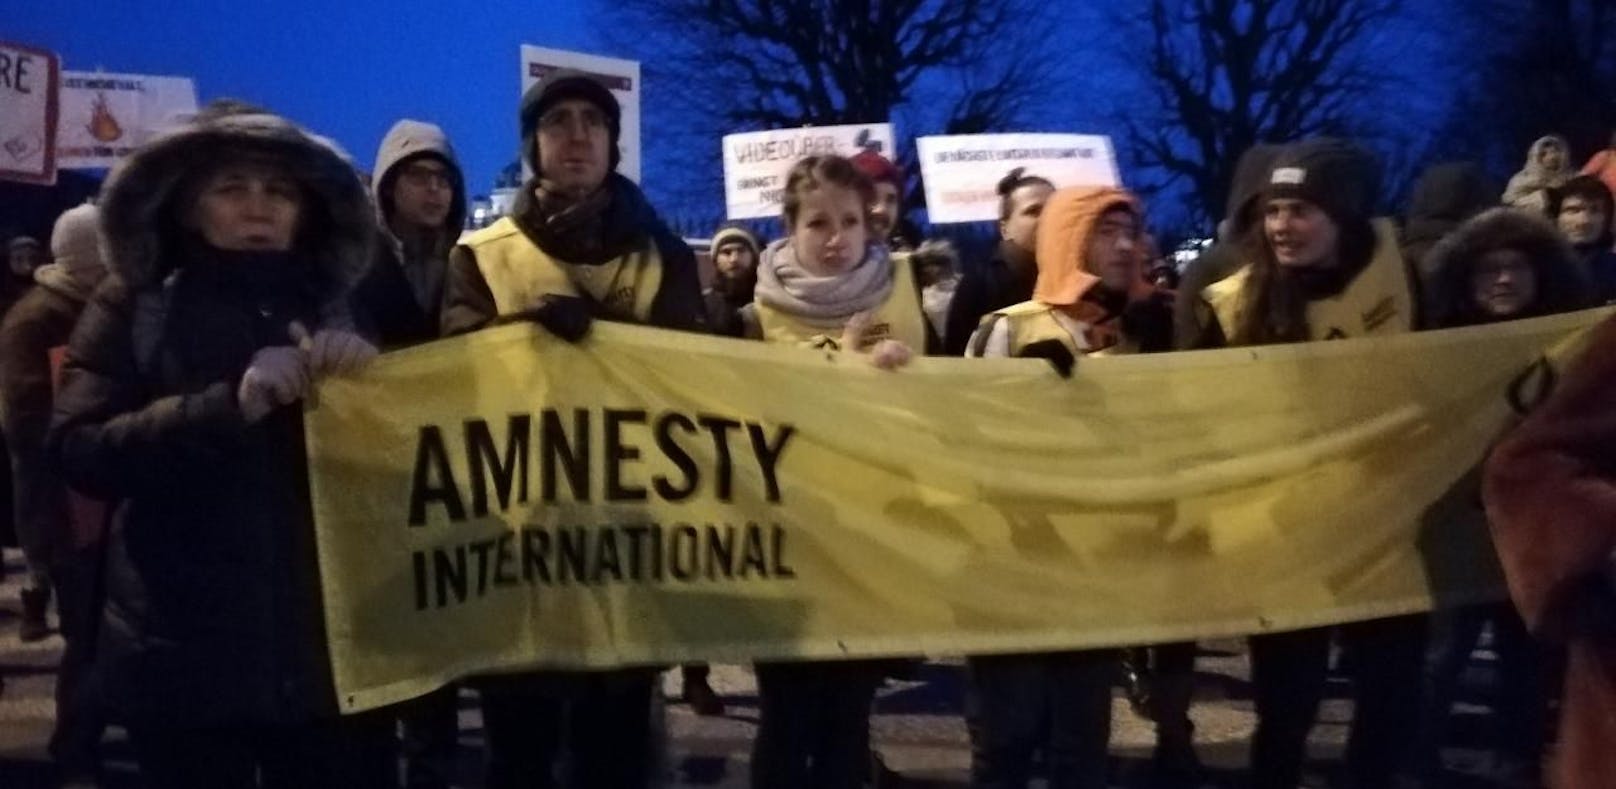 Amnesty International warnt vor dem geplanten Sicherheitspaket der Regierung. Im Bild: Die Amnesty-International Demo gegen das &quot;Überwachungspaket&quot; vor dem Kanzleramt am Ballhausplatz. 